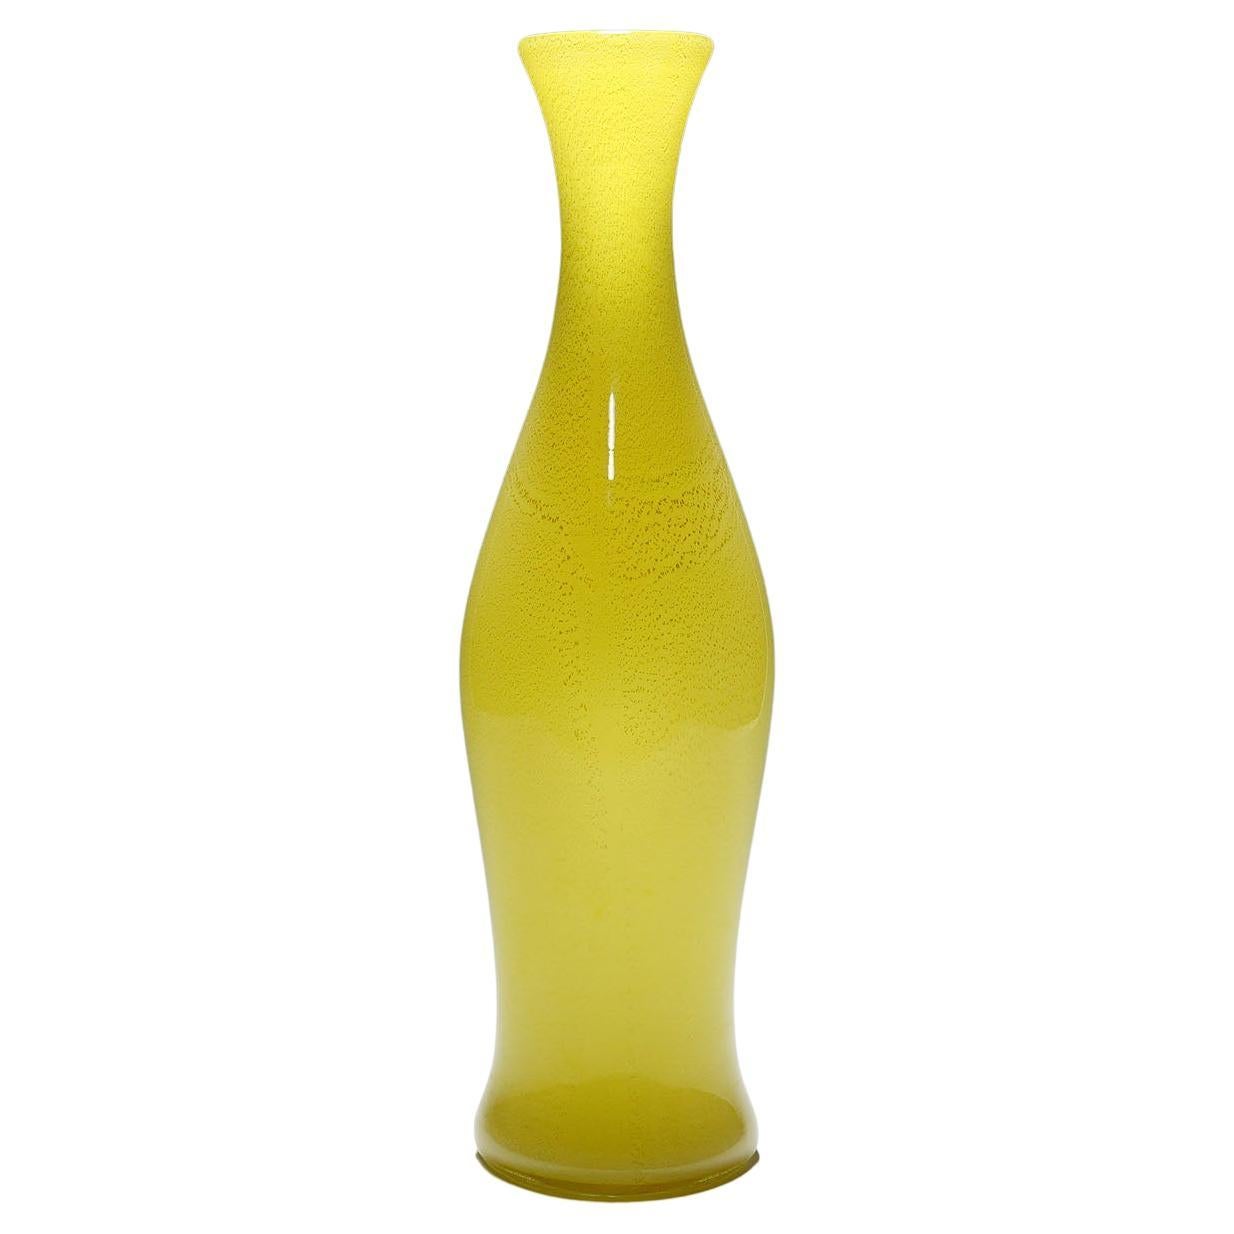 A Large Soffiato Glass Vase by Galliano Ferro, Murano ca. 1950s